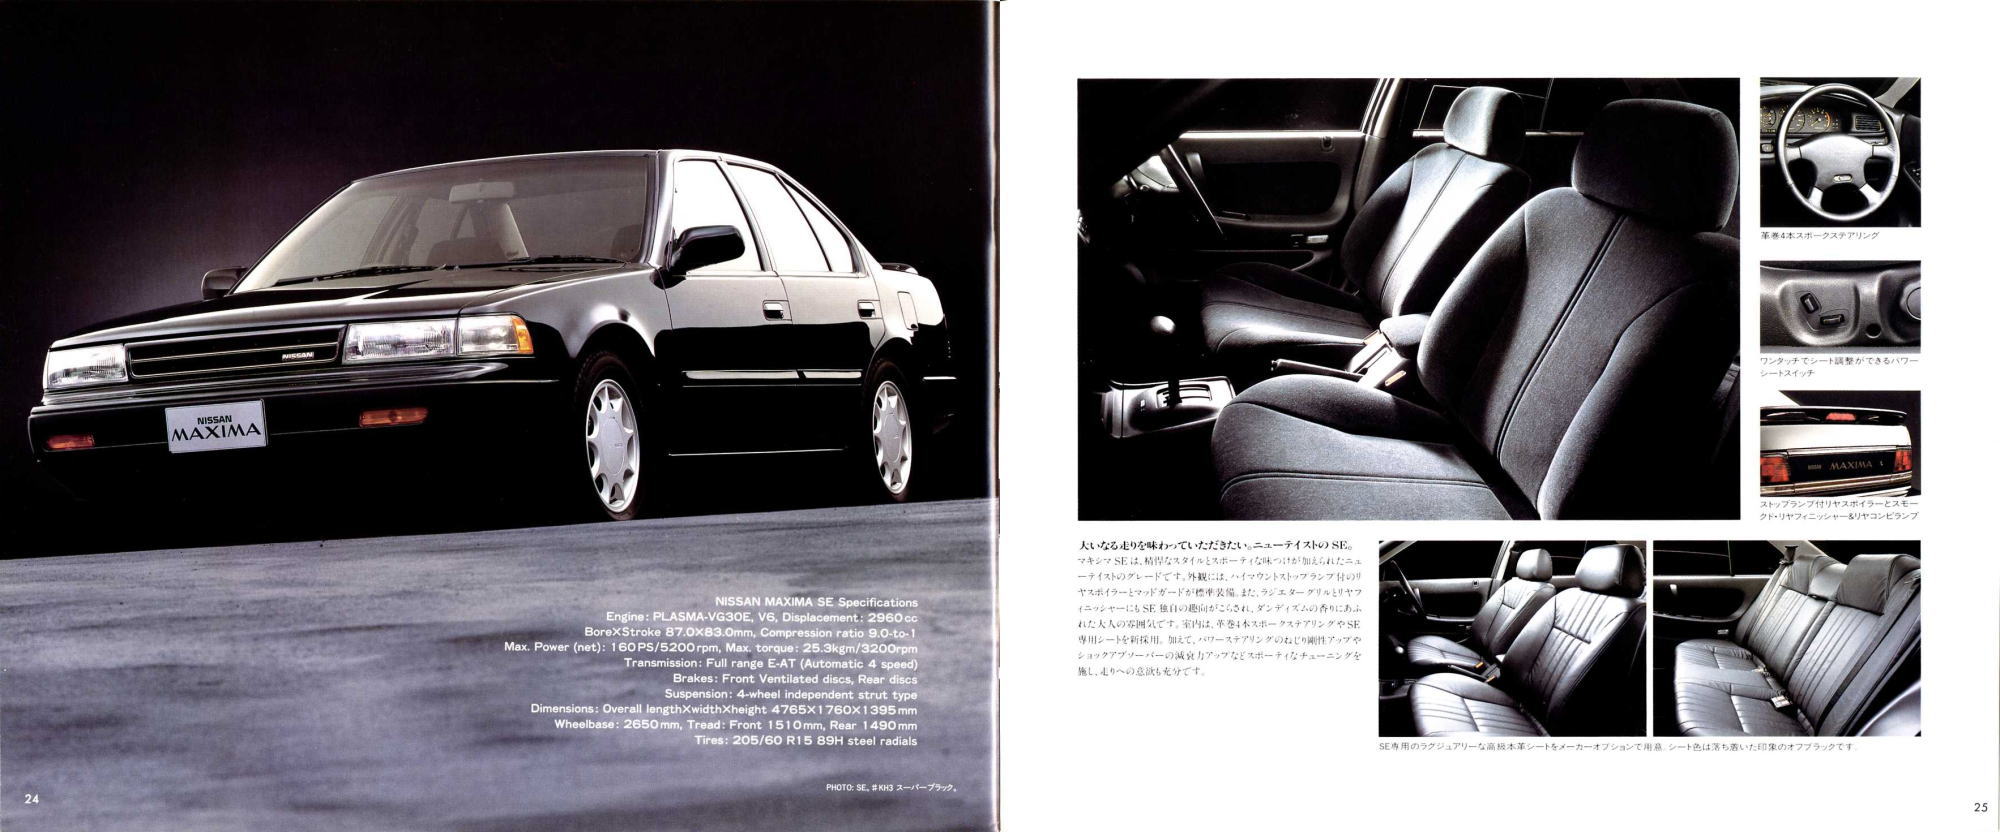 日産 1988 マキシマ(J30型)